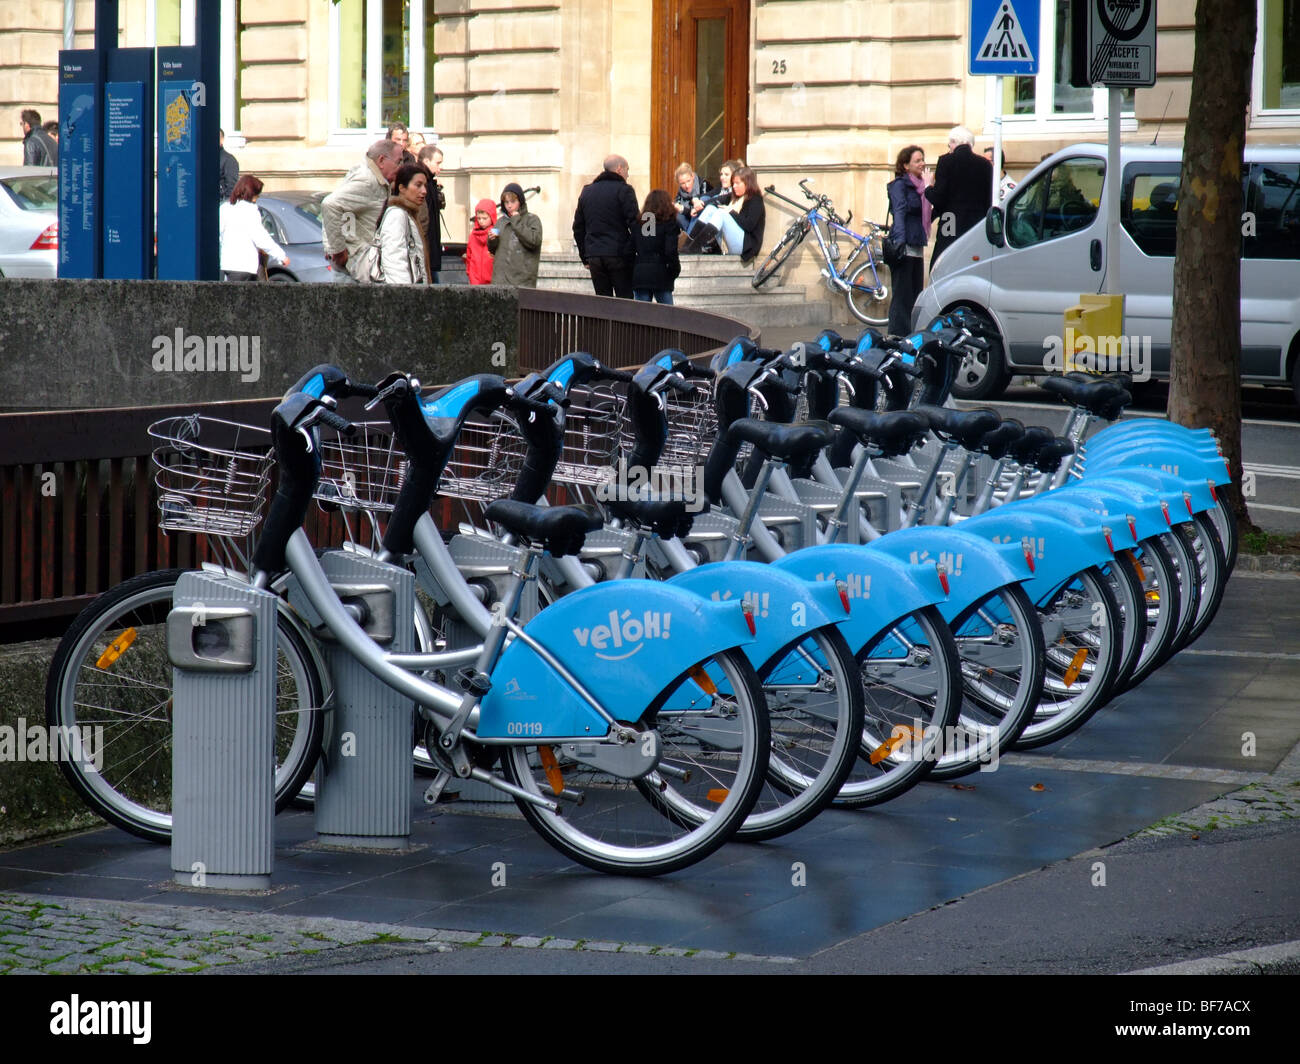 "Veloh' un pubblico nuovo noleggio biciclette nella città di Lussemburgo - Europa Foto Stock